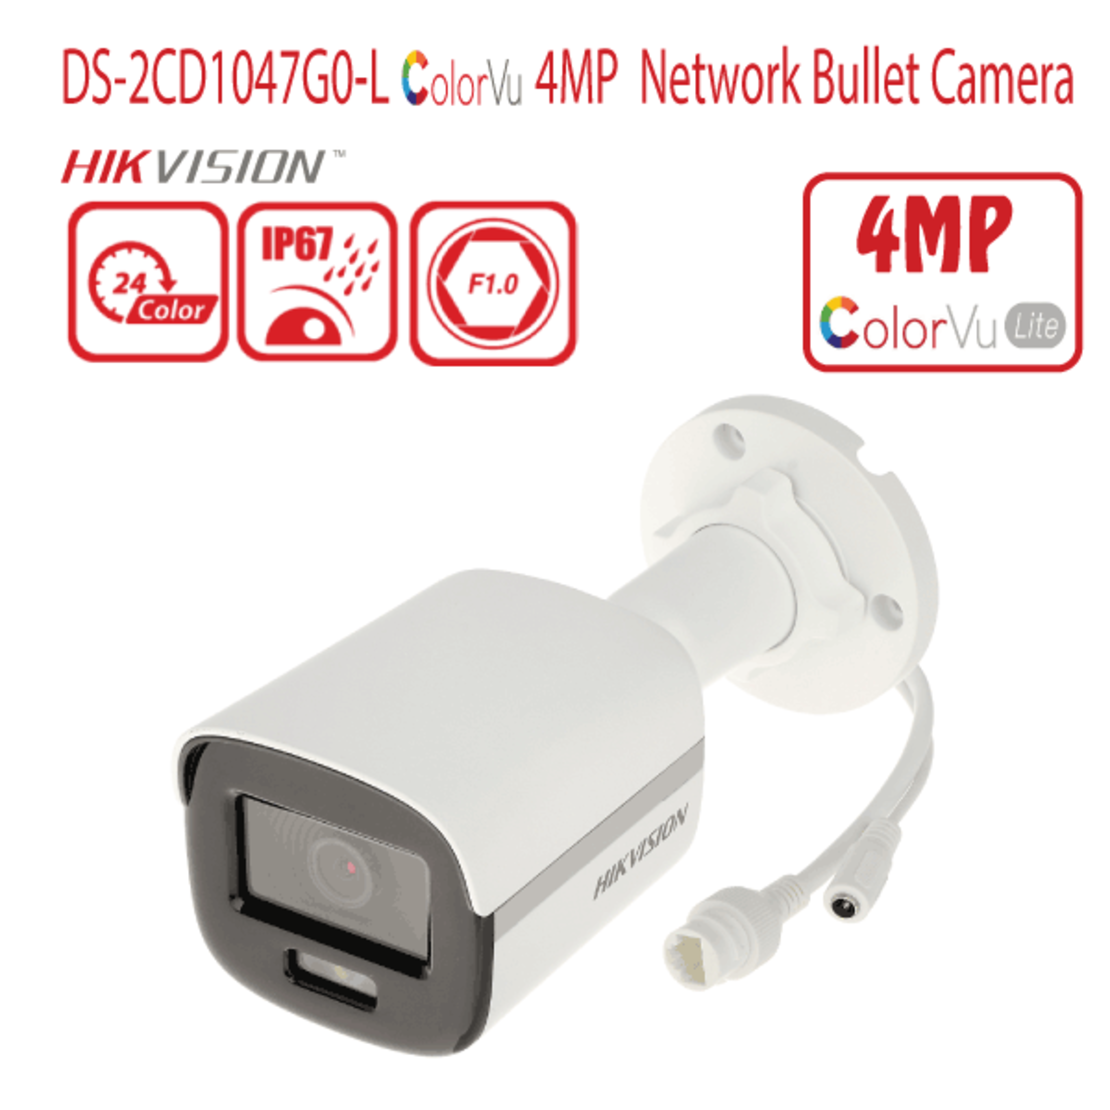 DS-2CD1047G0-L - מצלמת צינור IP ColorVu באיכות 4MP מבית Hikvision